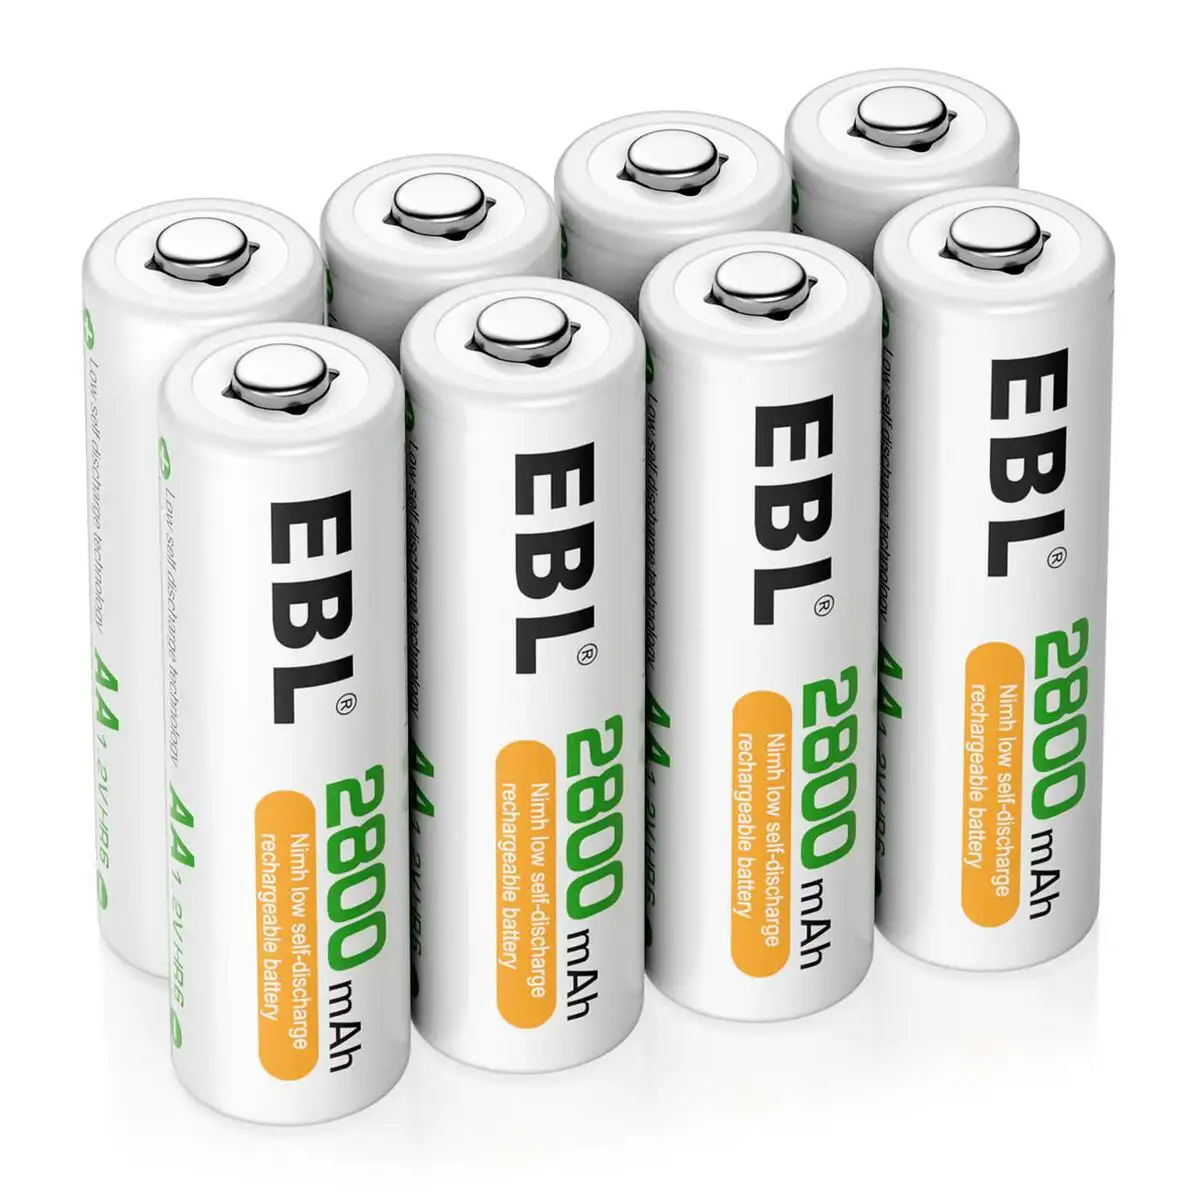 Batterie rechargeable ebl 2800 mah reconditionne a _7548. DIAYTAR SENEGAL - Où Choisir Devient un Acte de Découverte. Découvrez notre gamme et choisissez des produits qui éveillent votre curiosité et élargissent vos horizons.